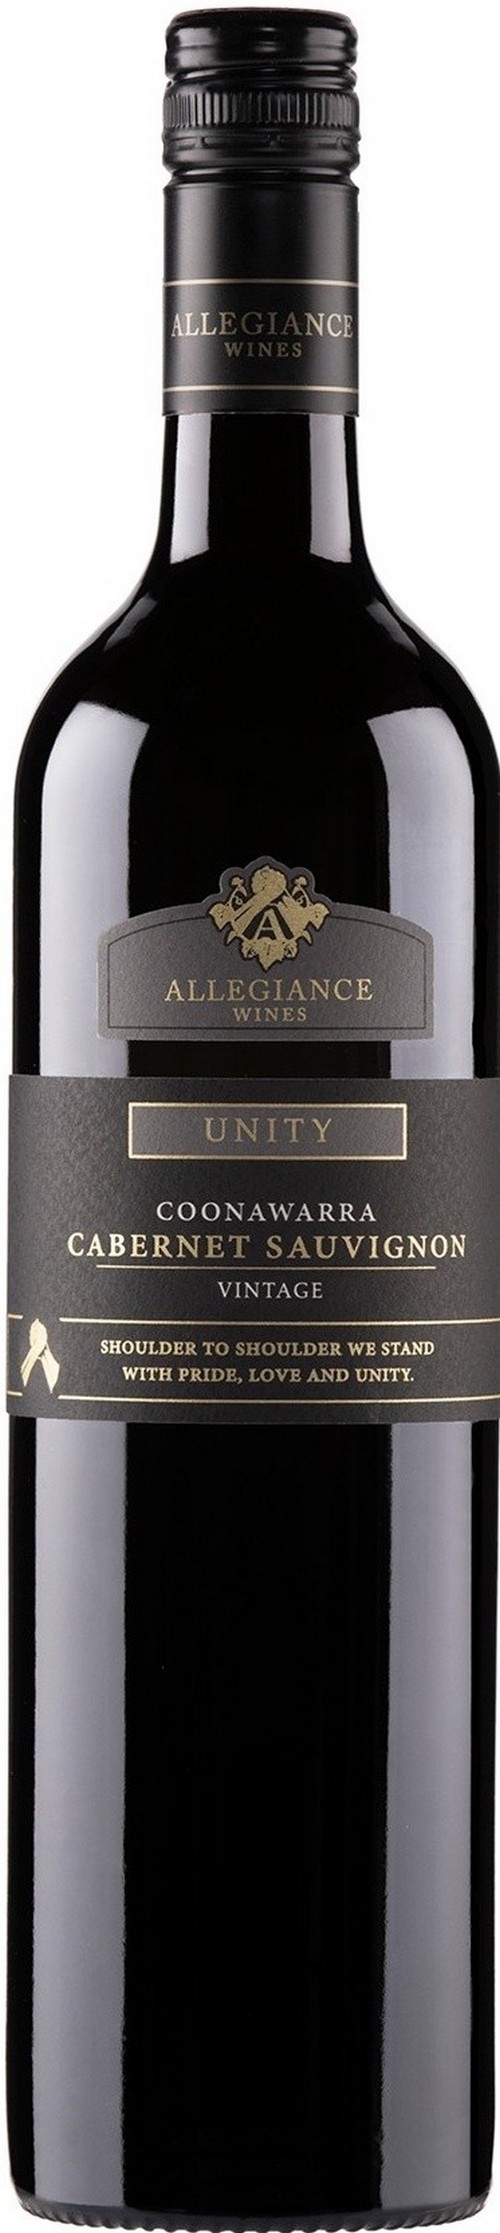 allegiance-wines-unity-coonawarra-cabernet-sauvignon-2021